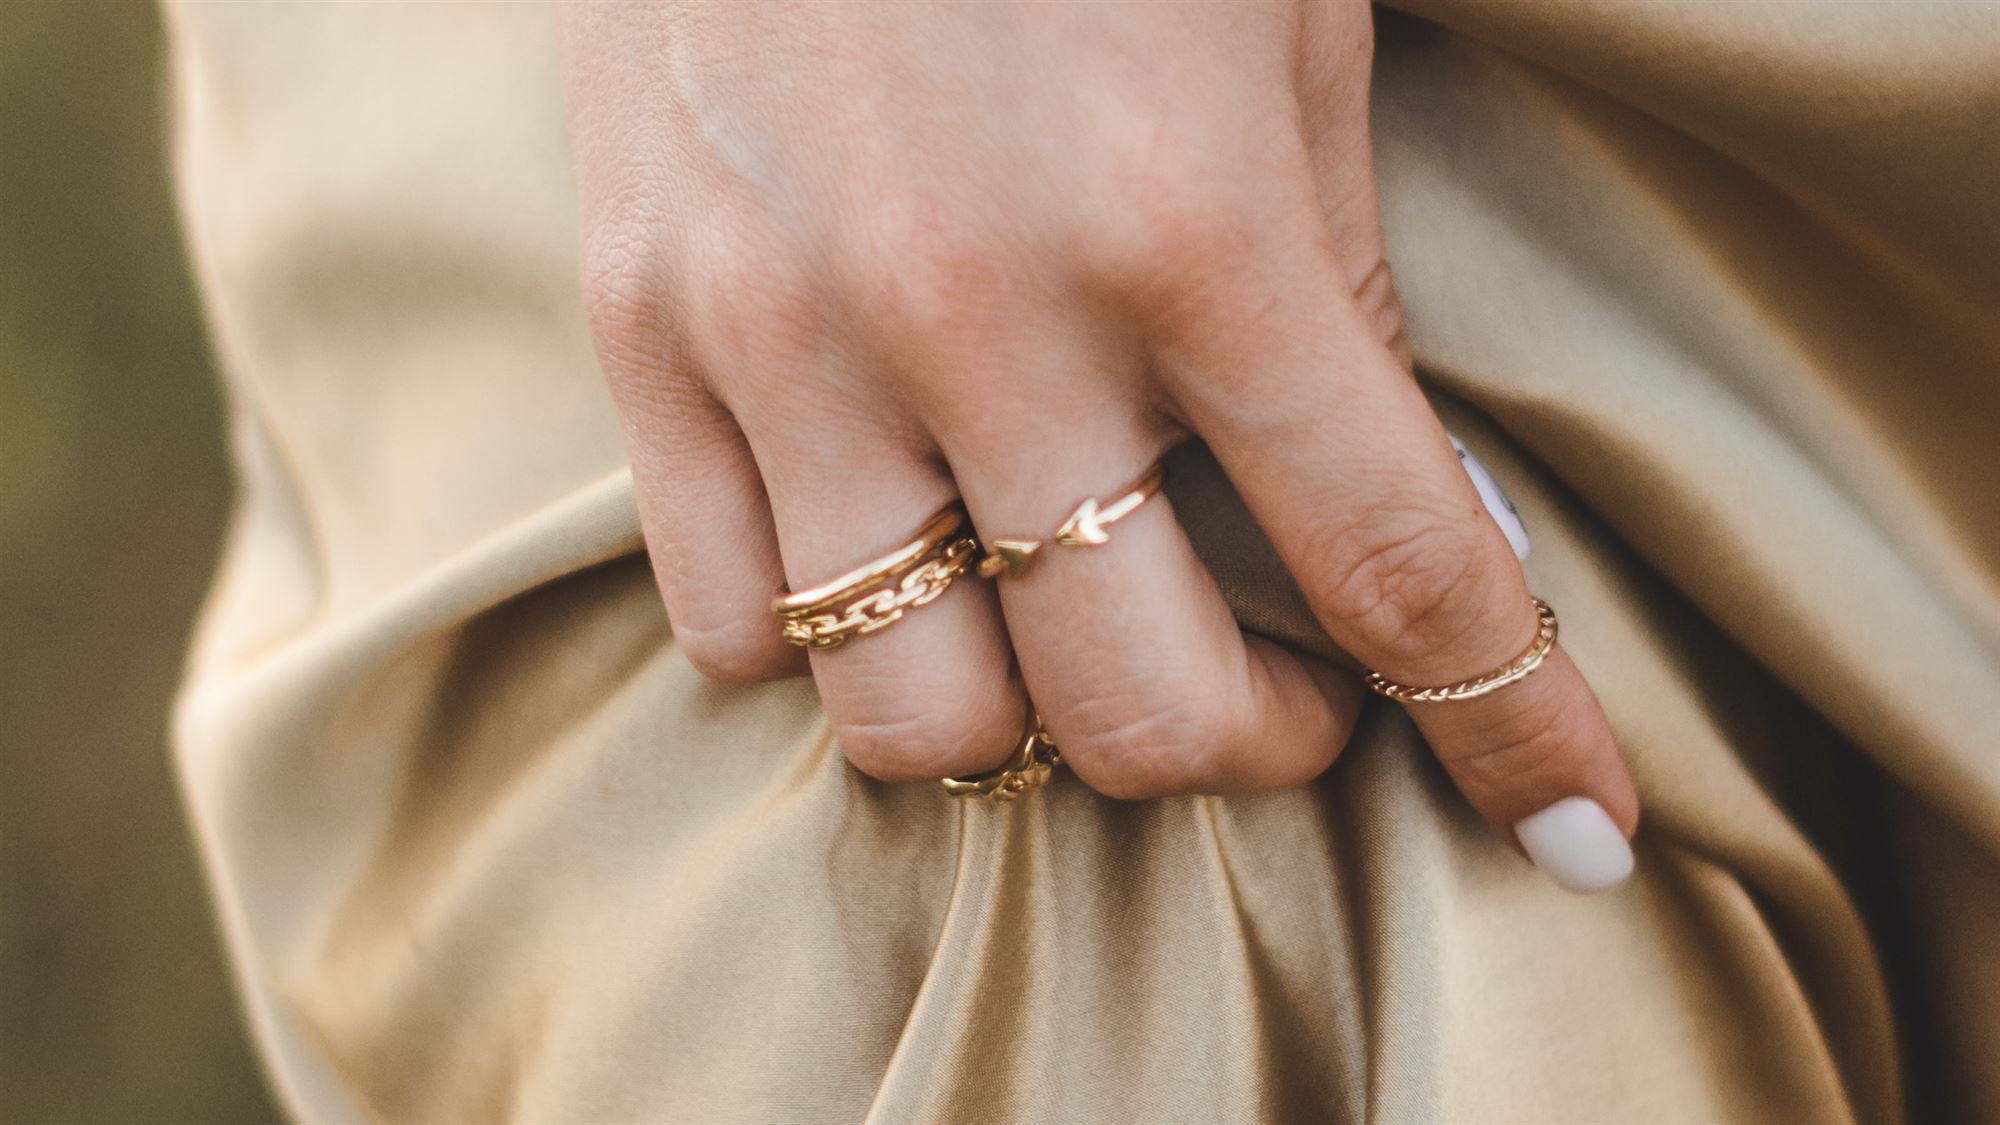 Принцесса руки. Кольцо на руке. Женская рука с кольцом. Кольцо для девушки. Кольцо на руке девушки.